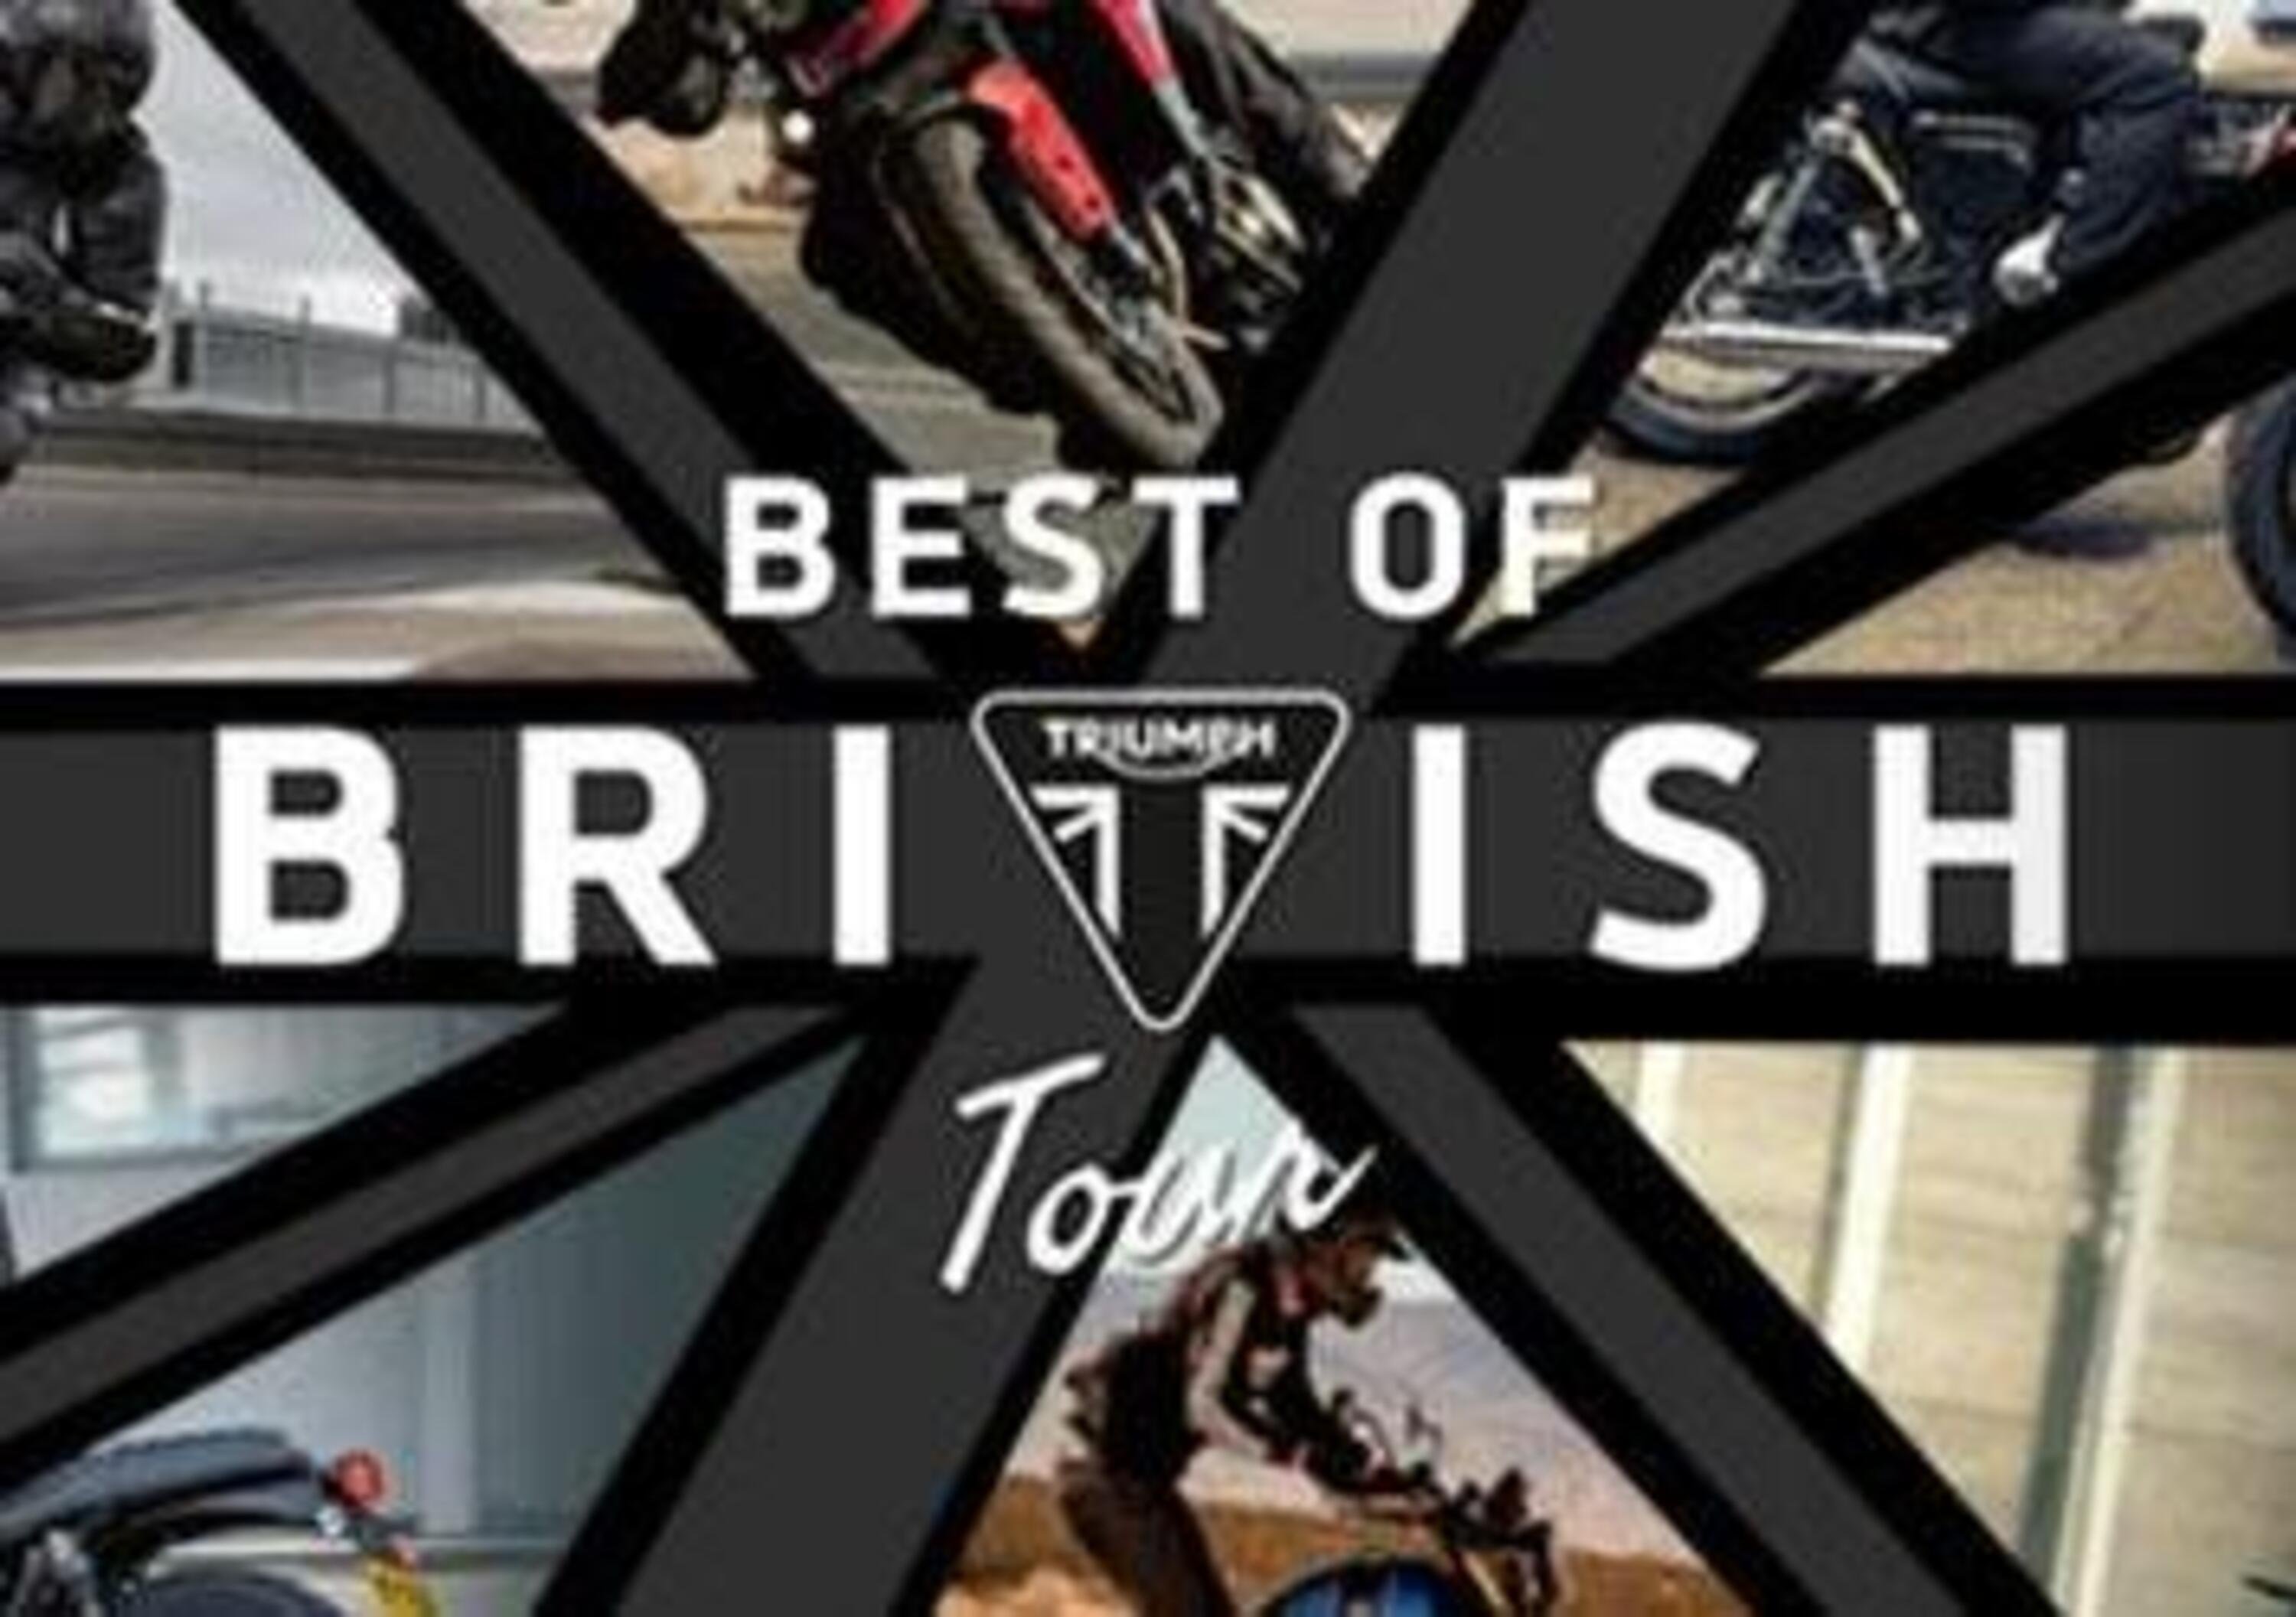 Triumph Sicilia inaugura a Messina con i test ride di Best of British Tour 2021